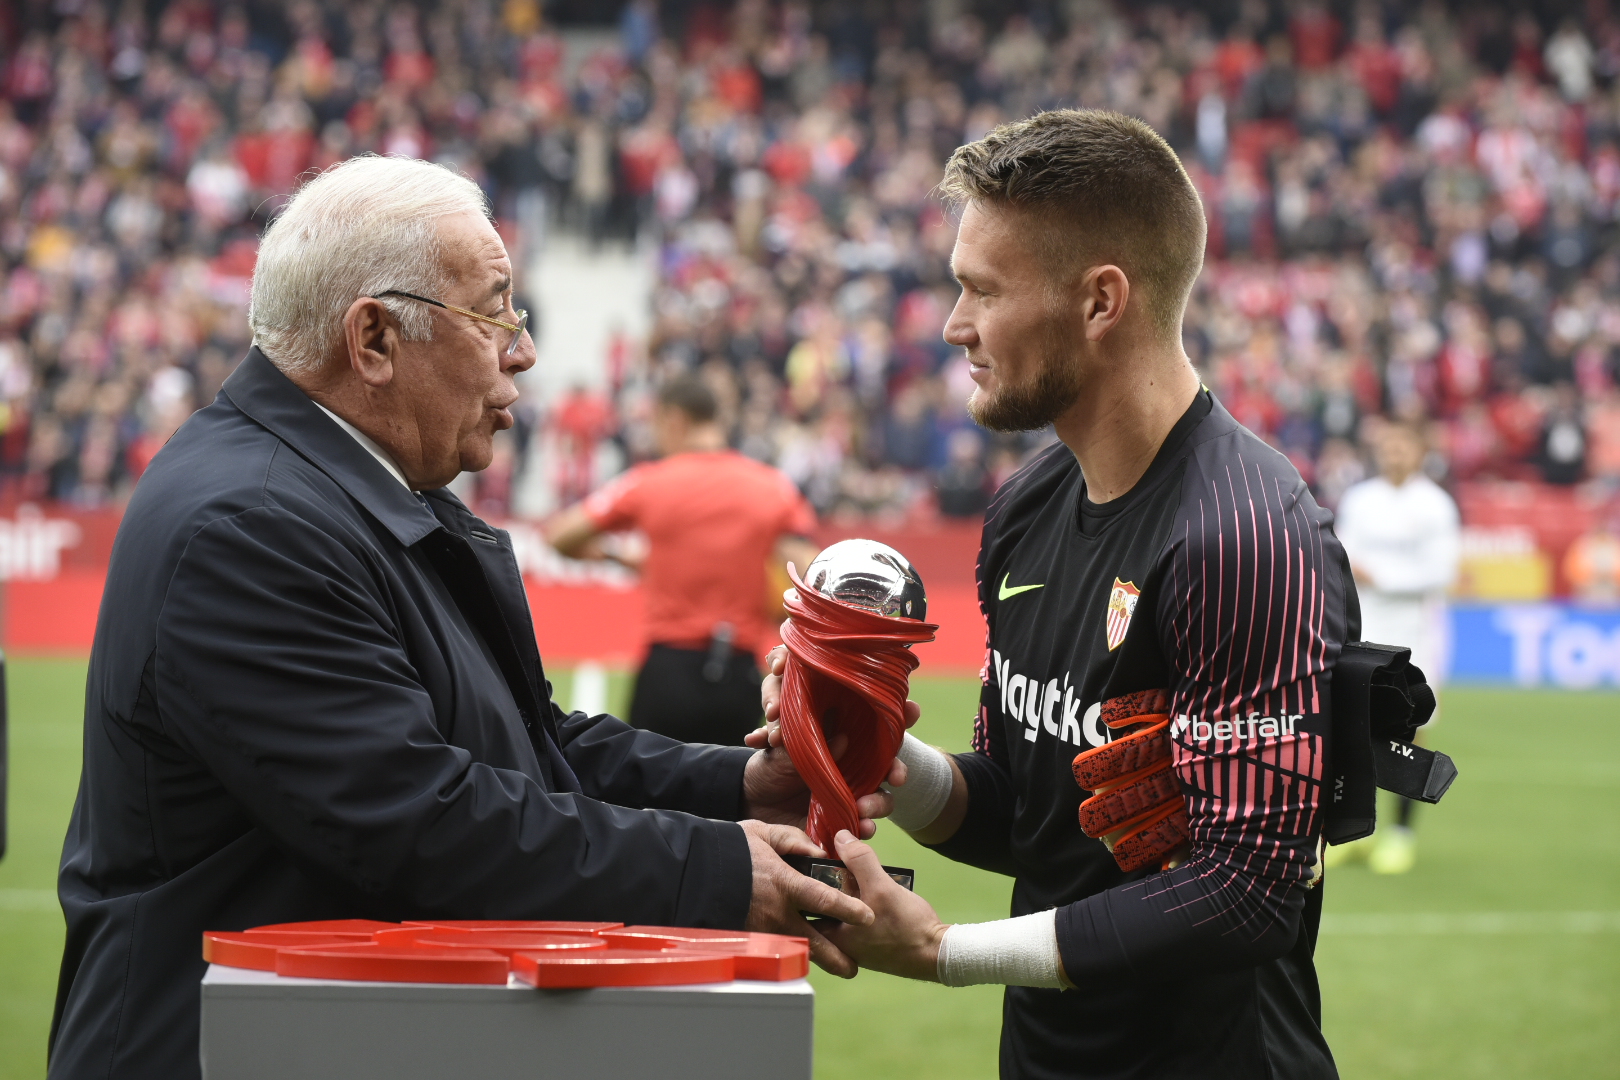 Súper Paco hands the trophy to Vaclík